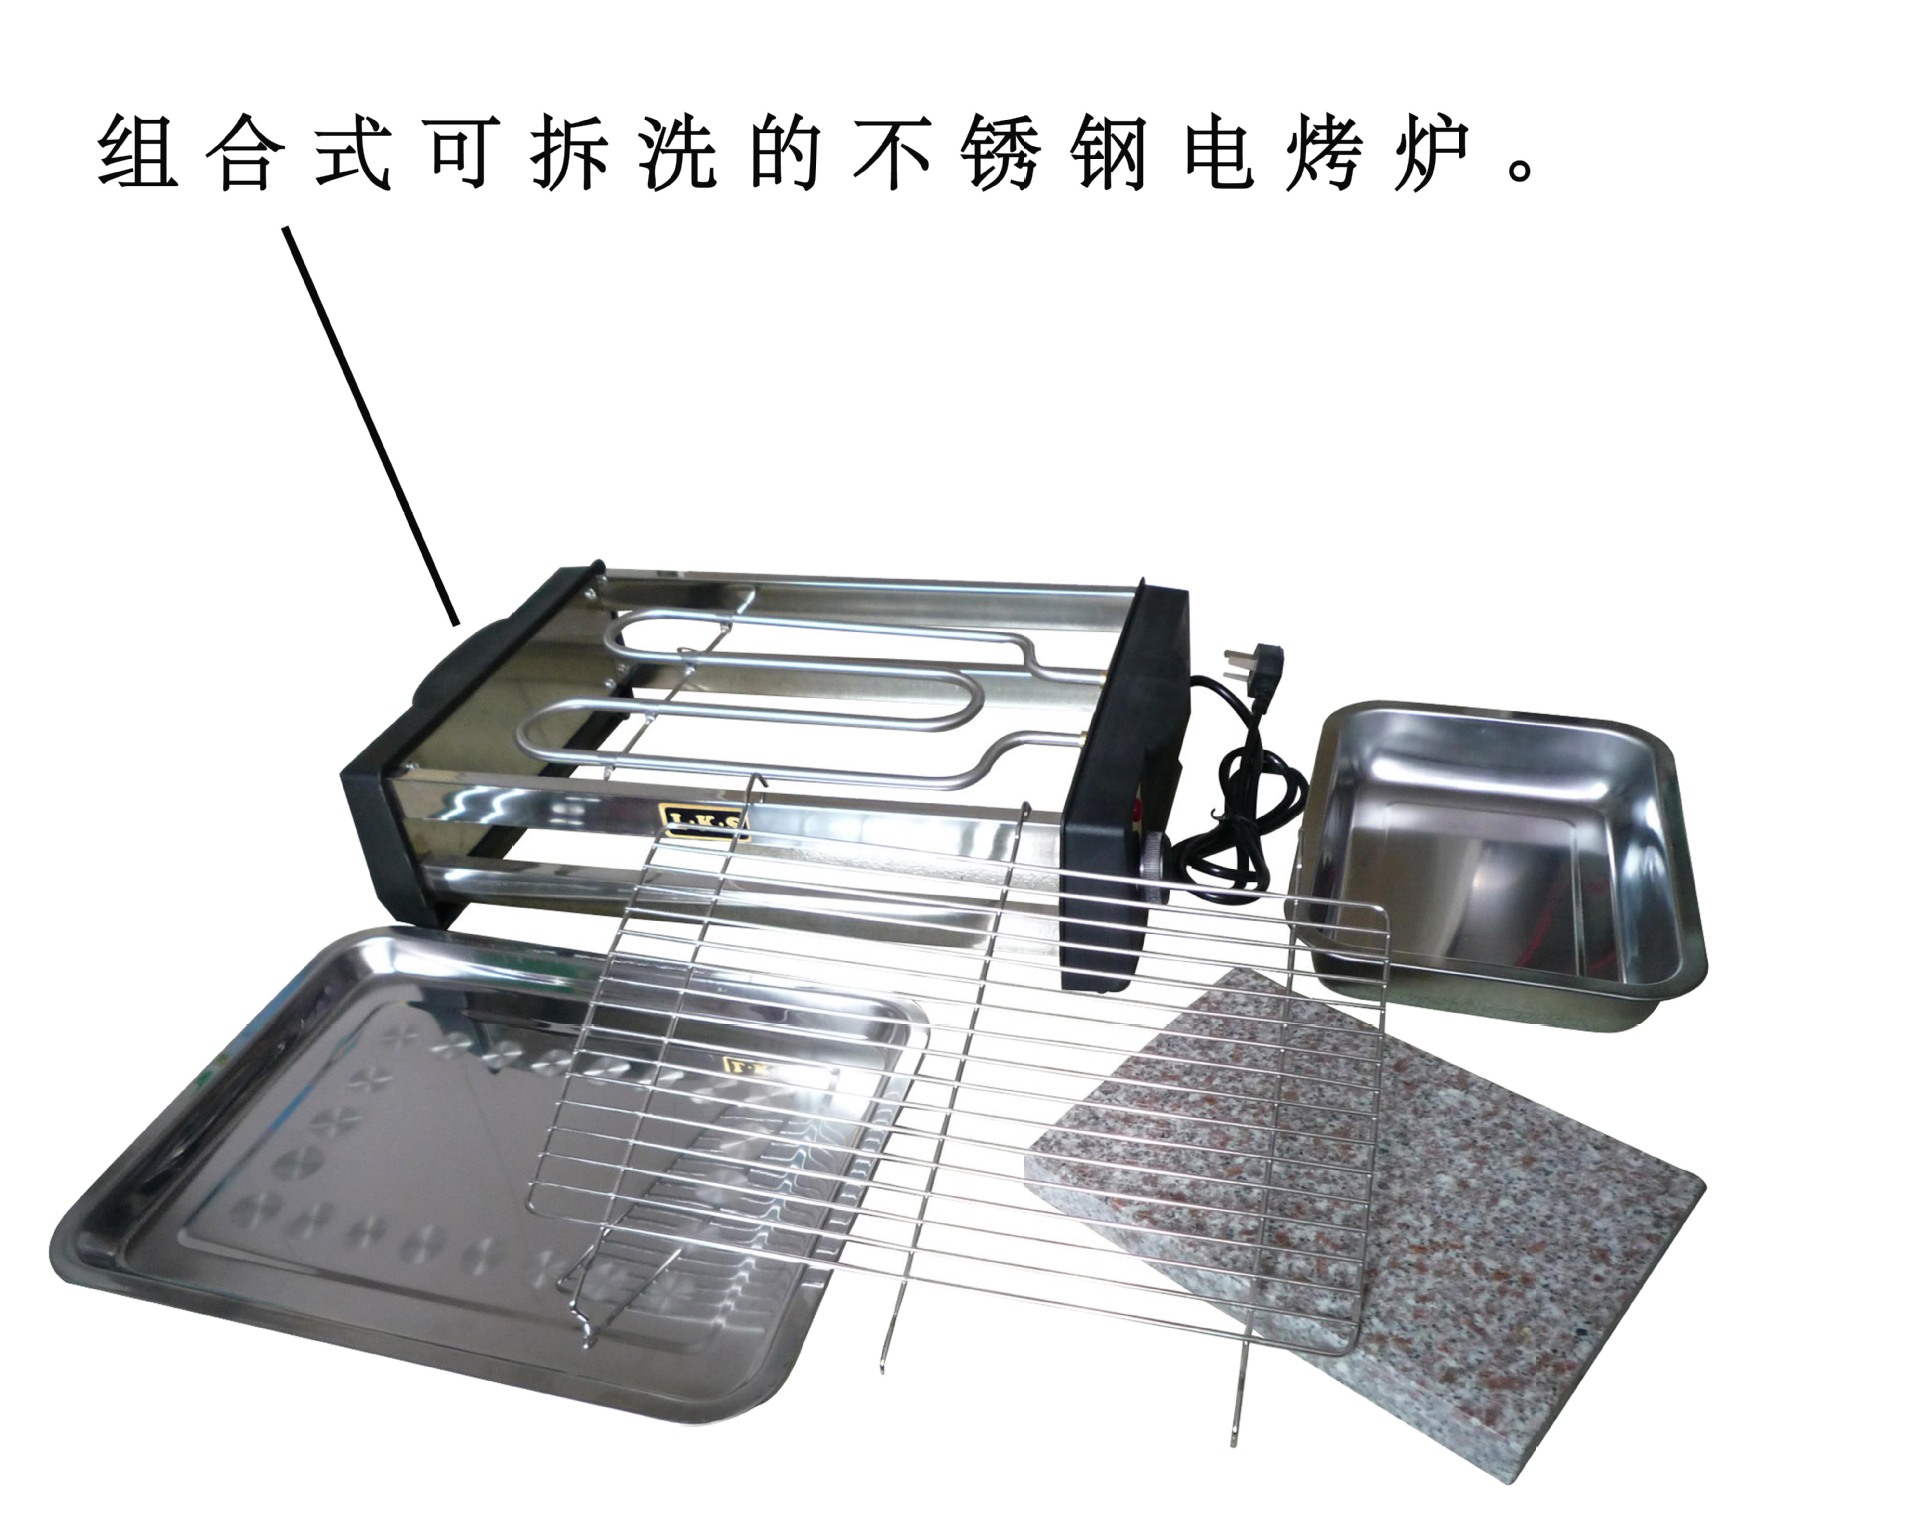 5.组合式可拆洗的不锈钢电烤炉。